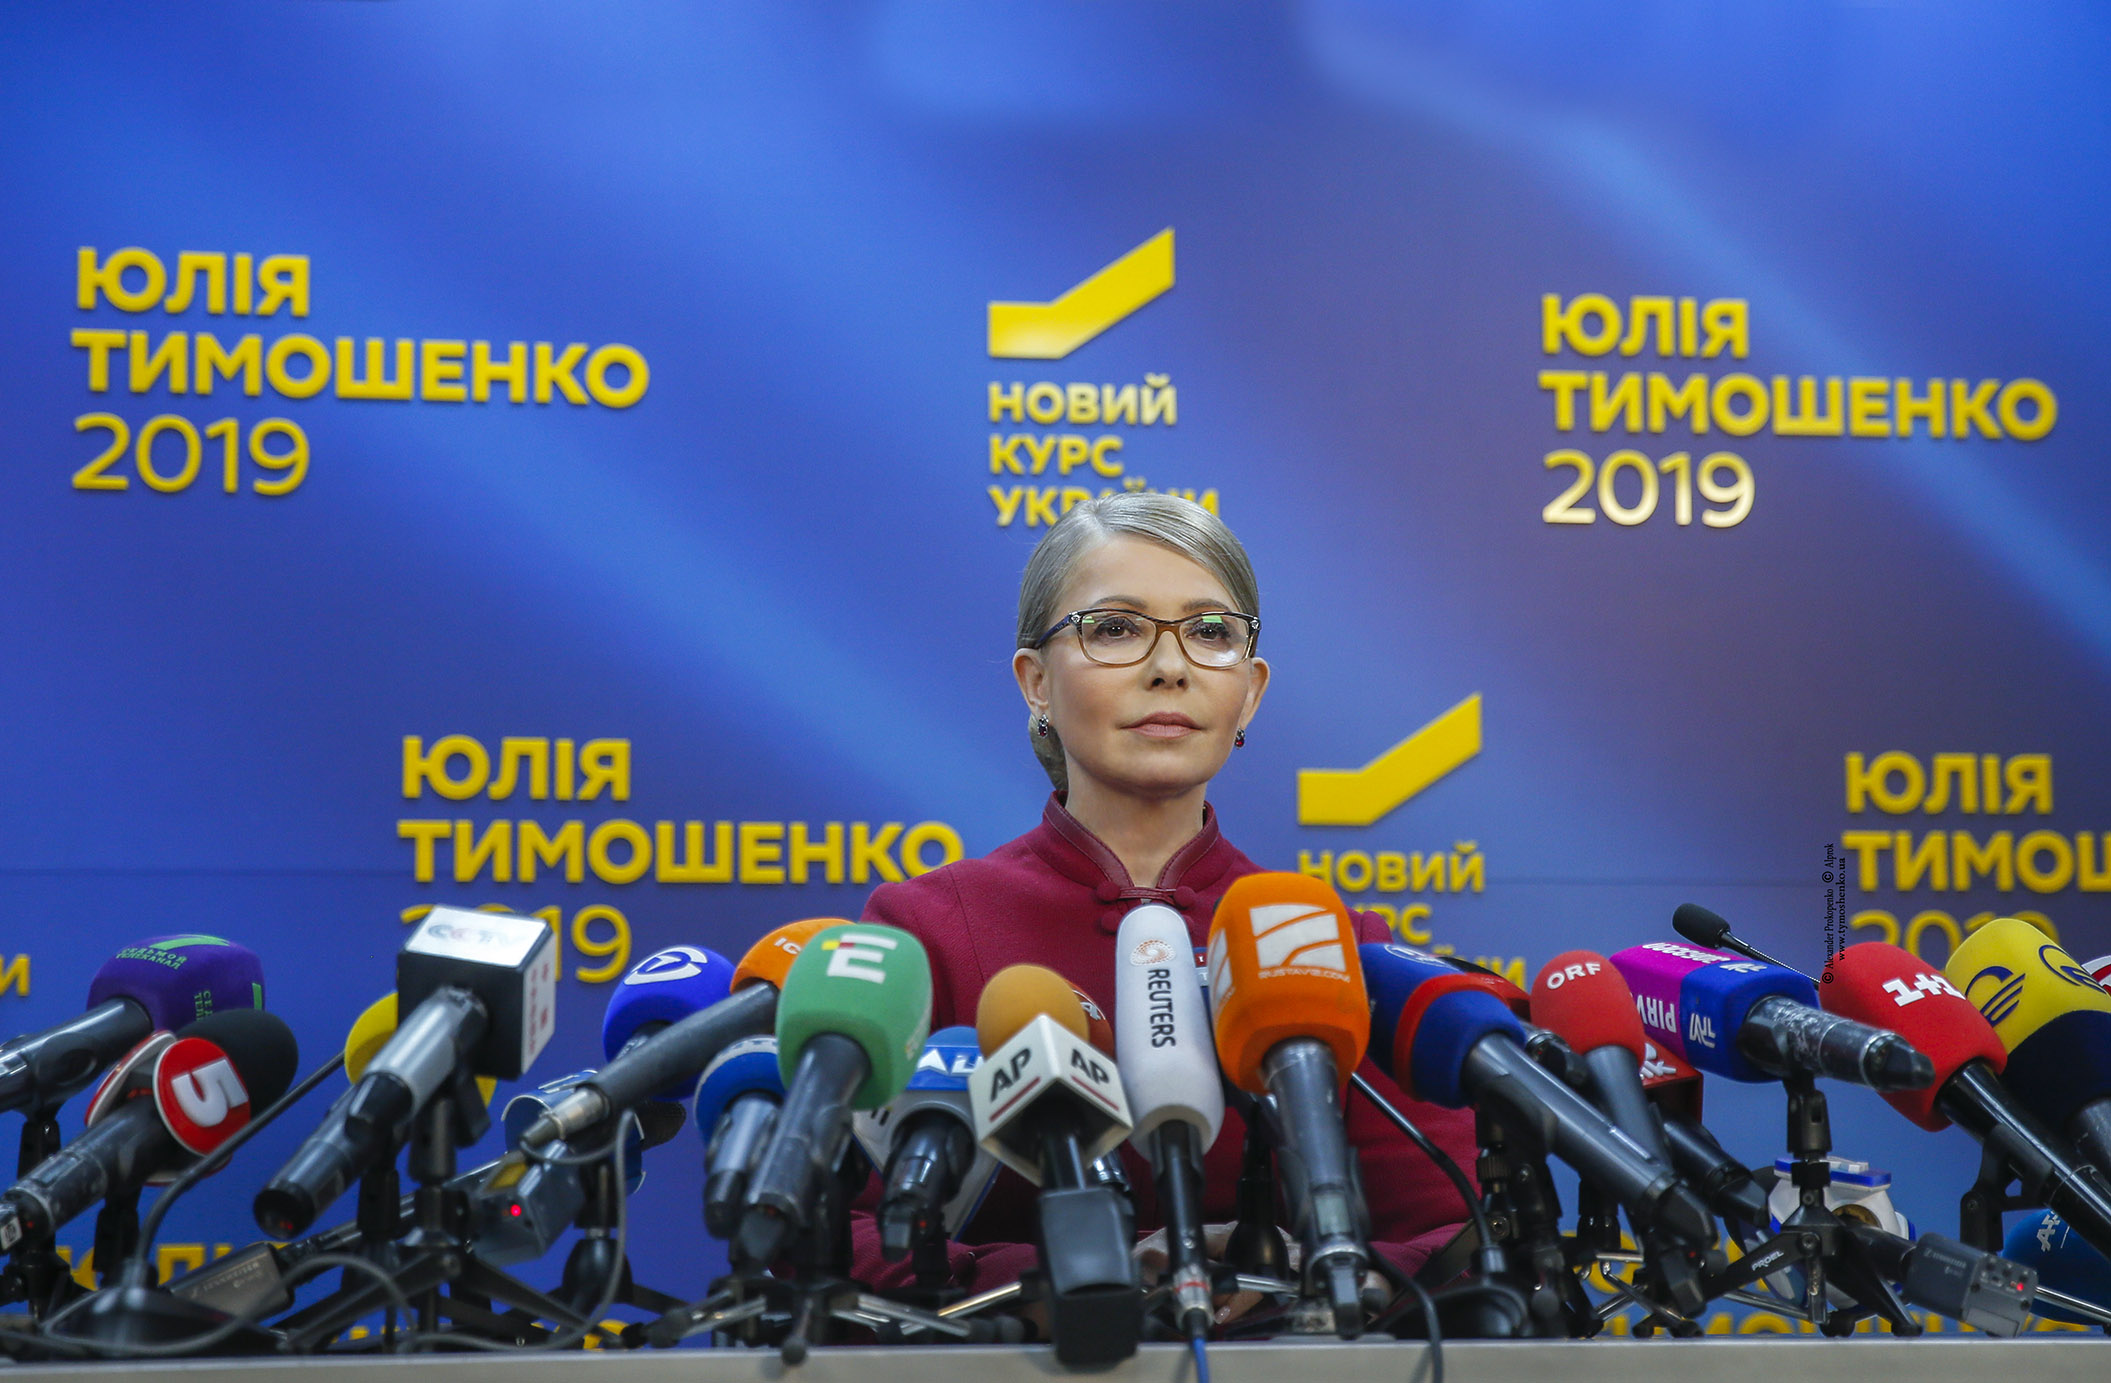 Тимошенко нацелилась победить на выборах в Верховную Раду: политик озвучила план